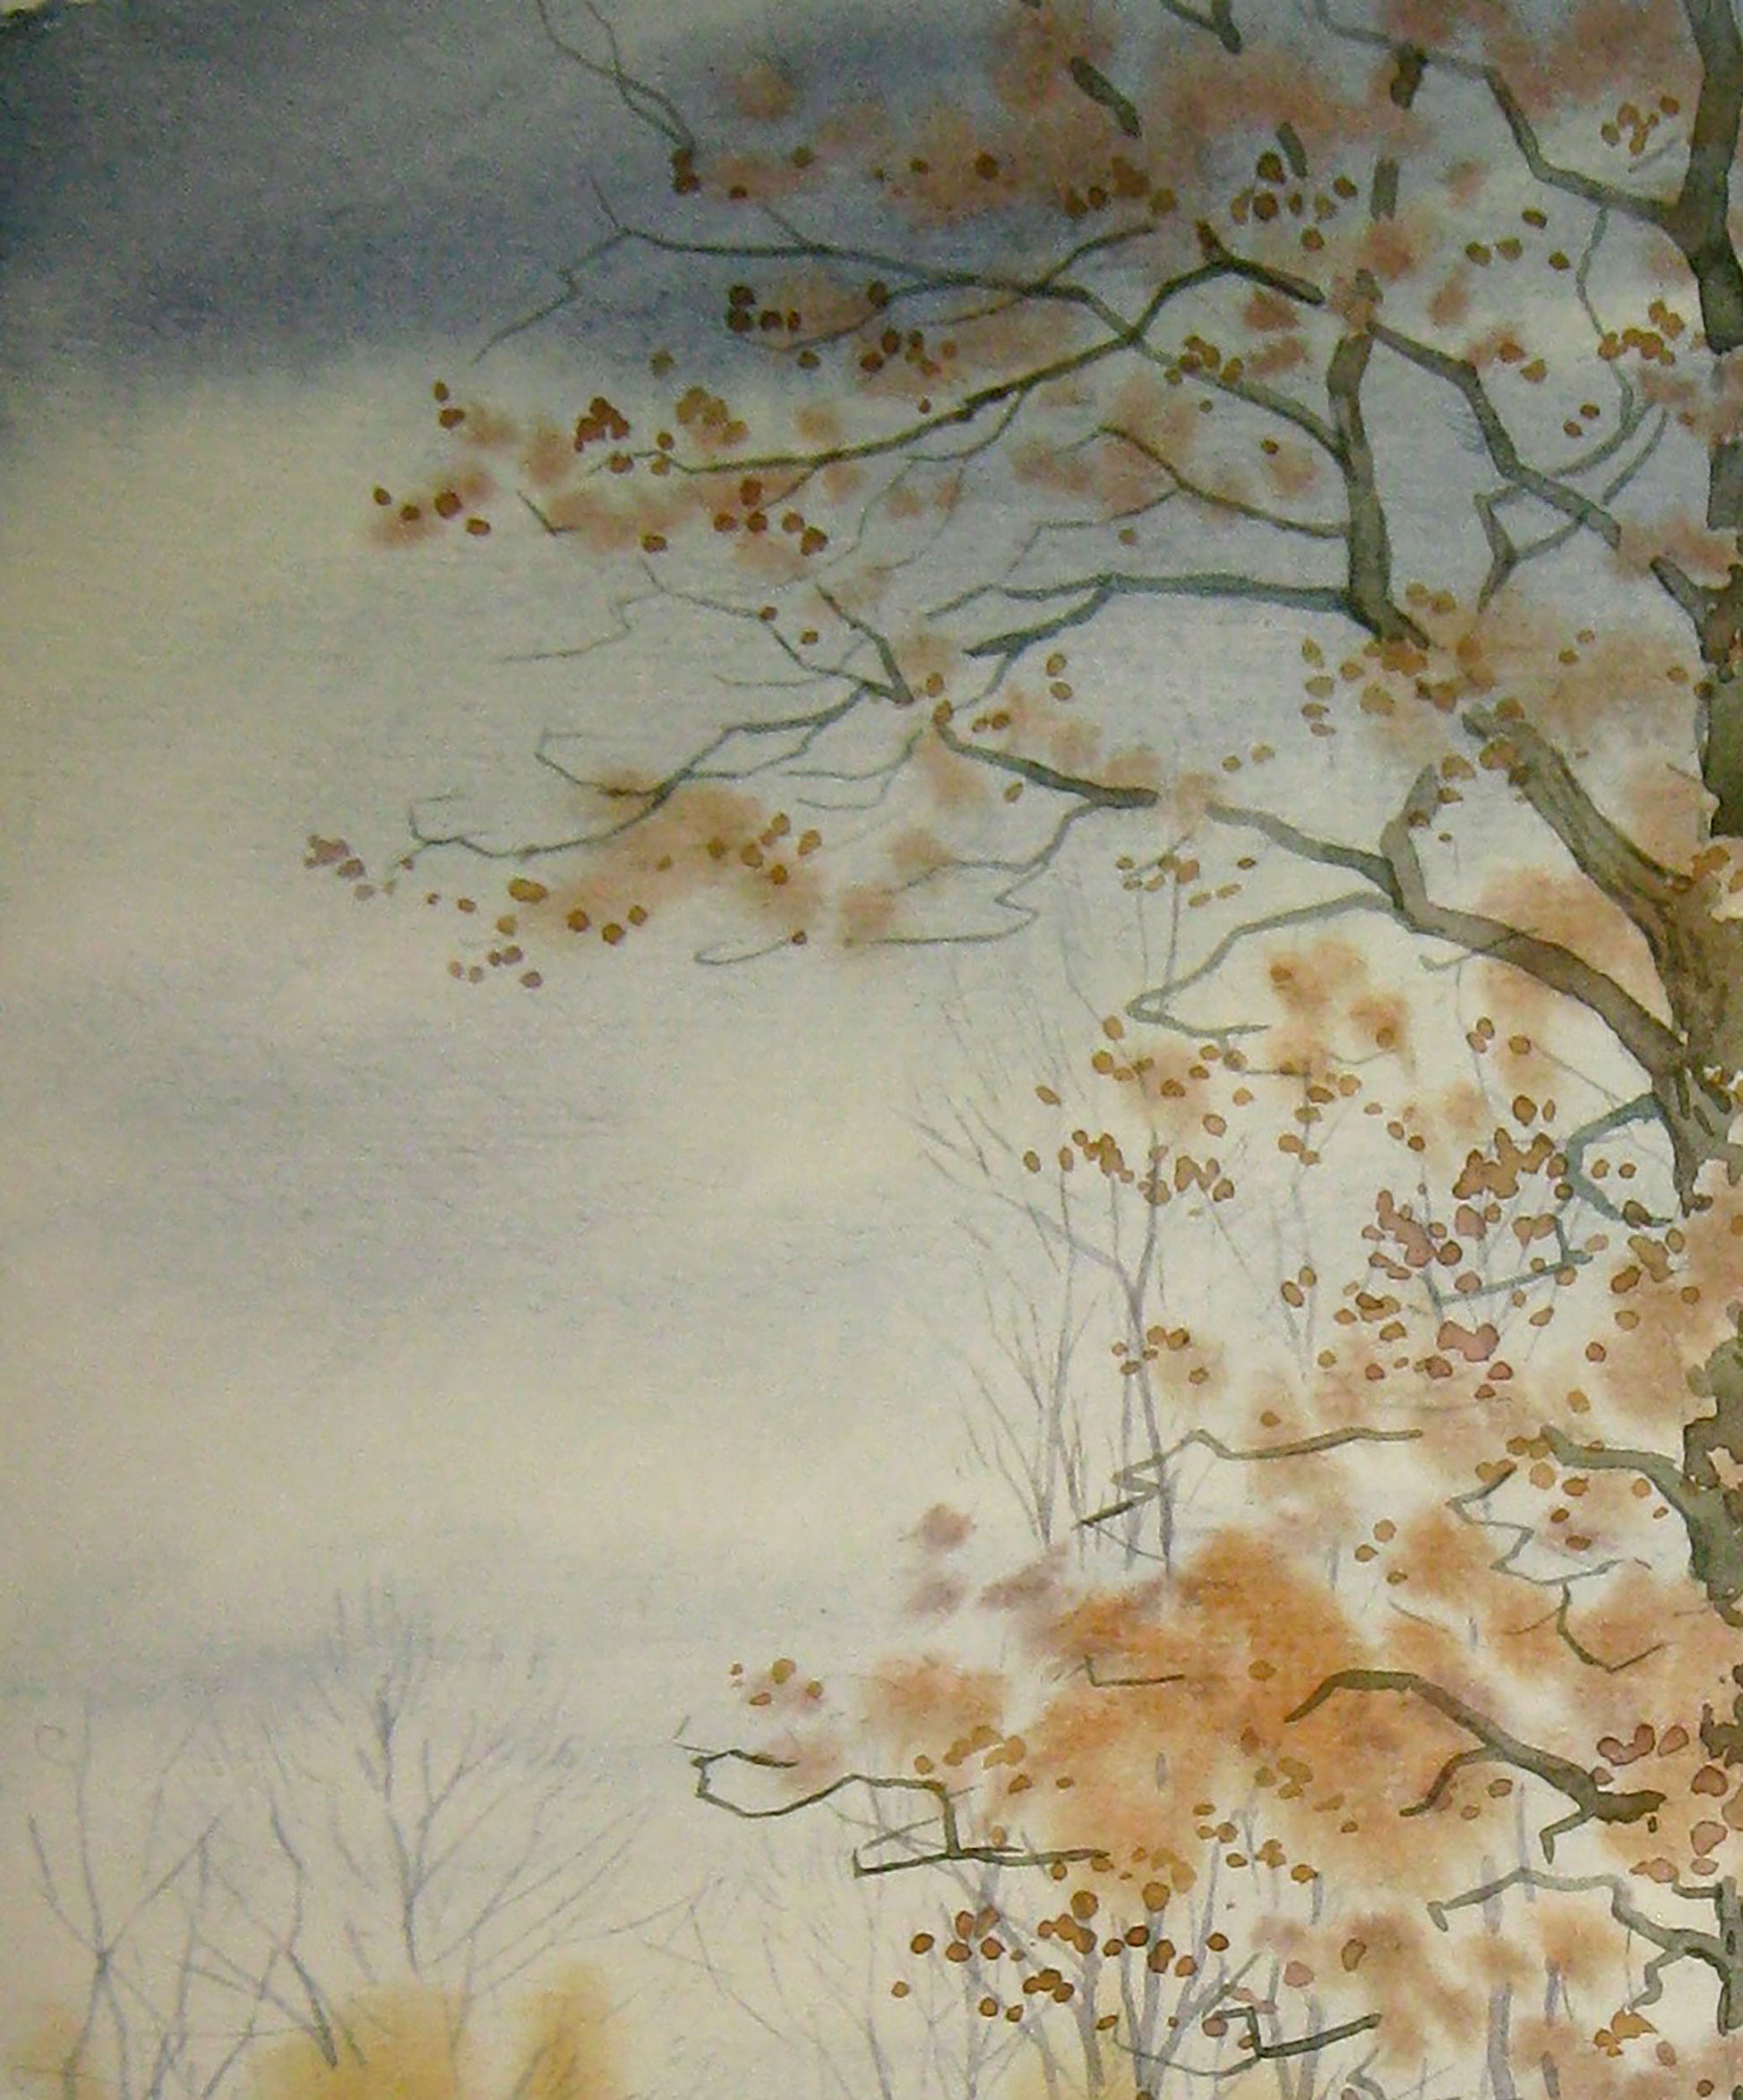 Watercolor painting "Oak" by Valery Savenets.